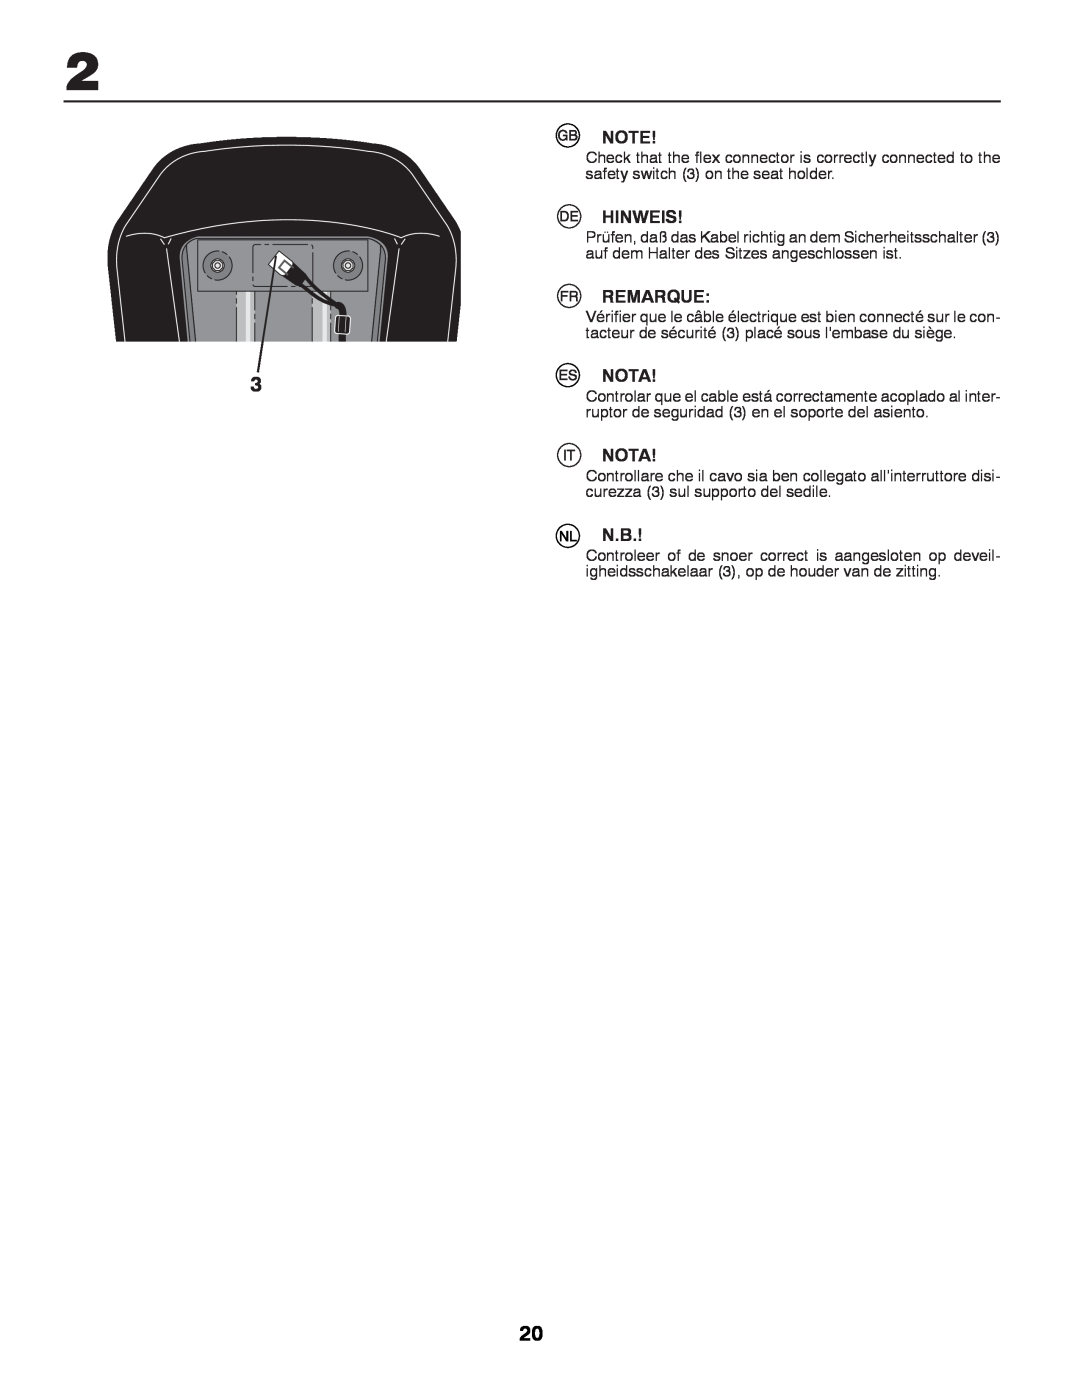 Partner Tech P12597RB instruction manual Hinweis, Remarque, Nota, tacteur de sécurité 3 placé sous lembase du siège 